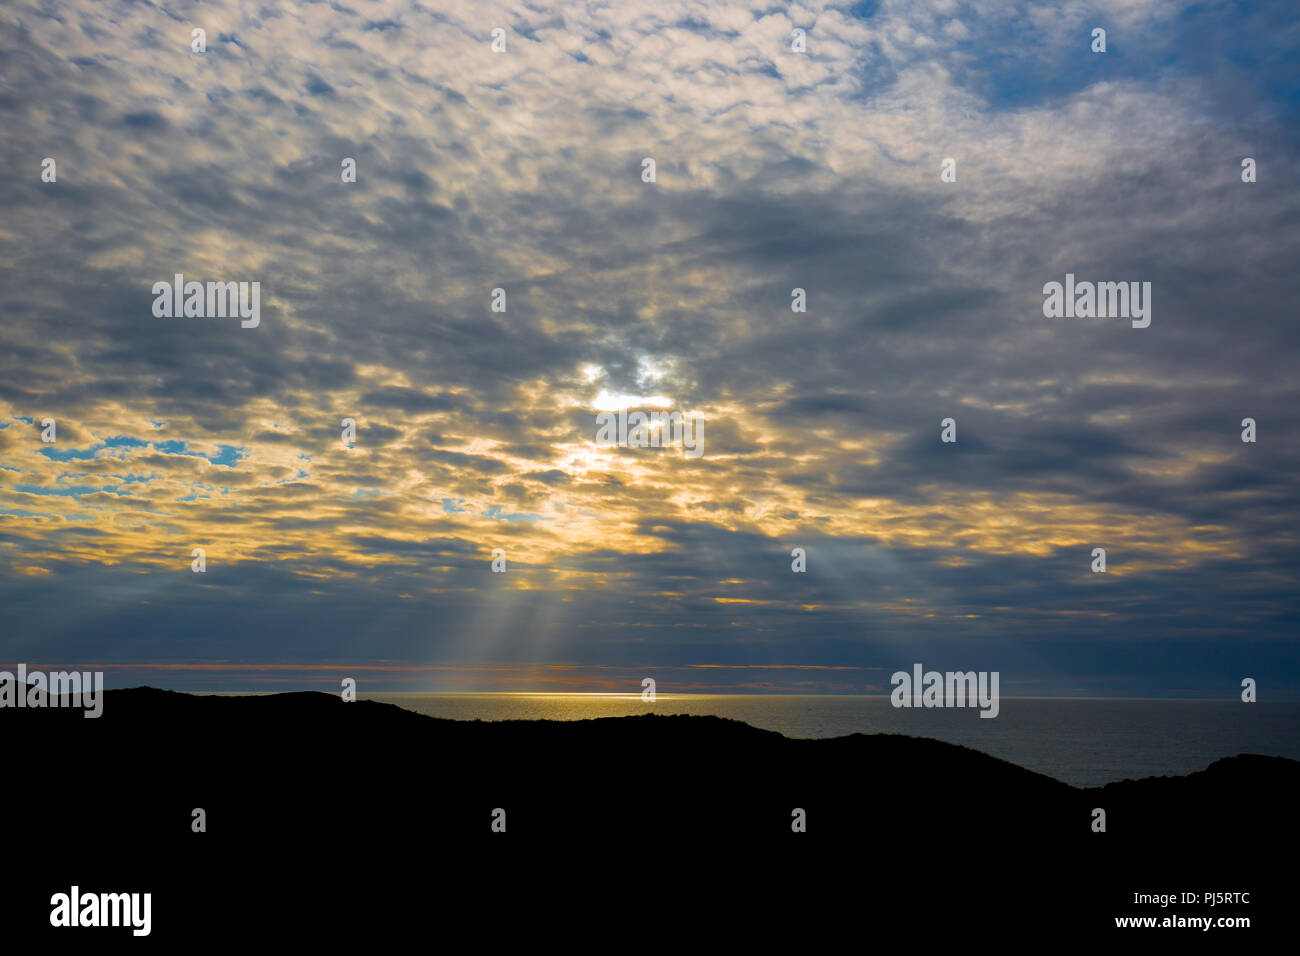 Abendlicht, mit Meerblick von Silhouette Landspitze letzten Strahlen der Sonne nach unten durchgebrochen Cloud Beleuchtung bis aufs Meer. Sonne über Horizont Stockfoto